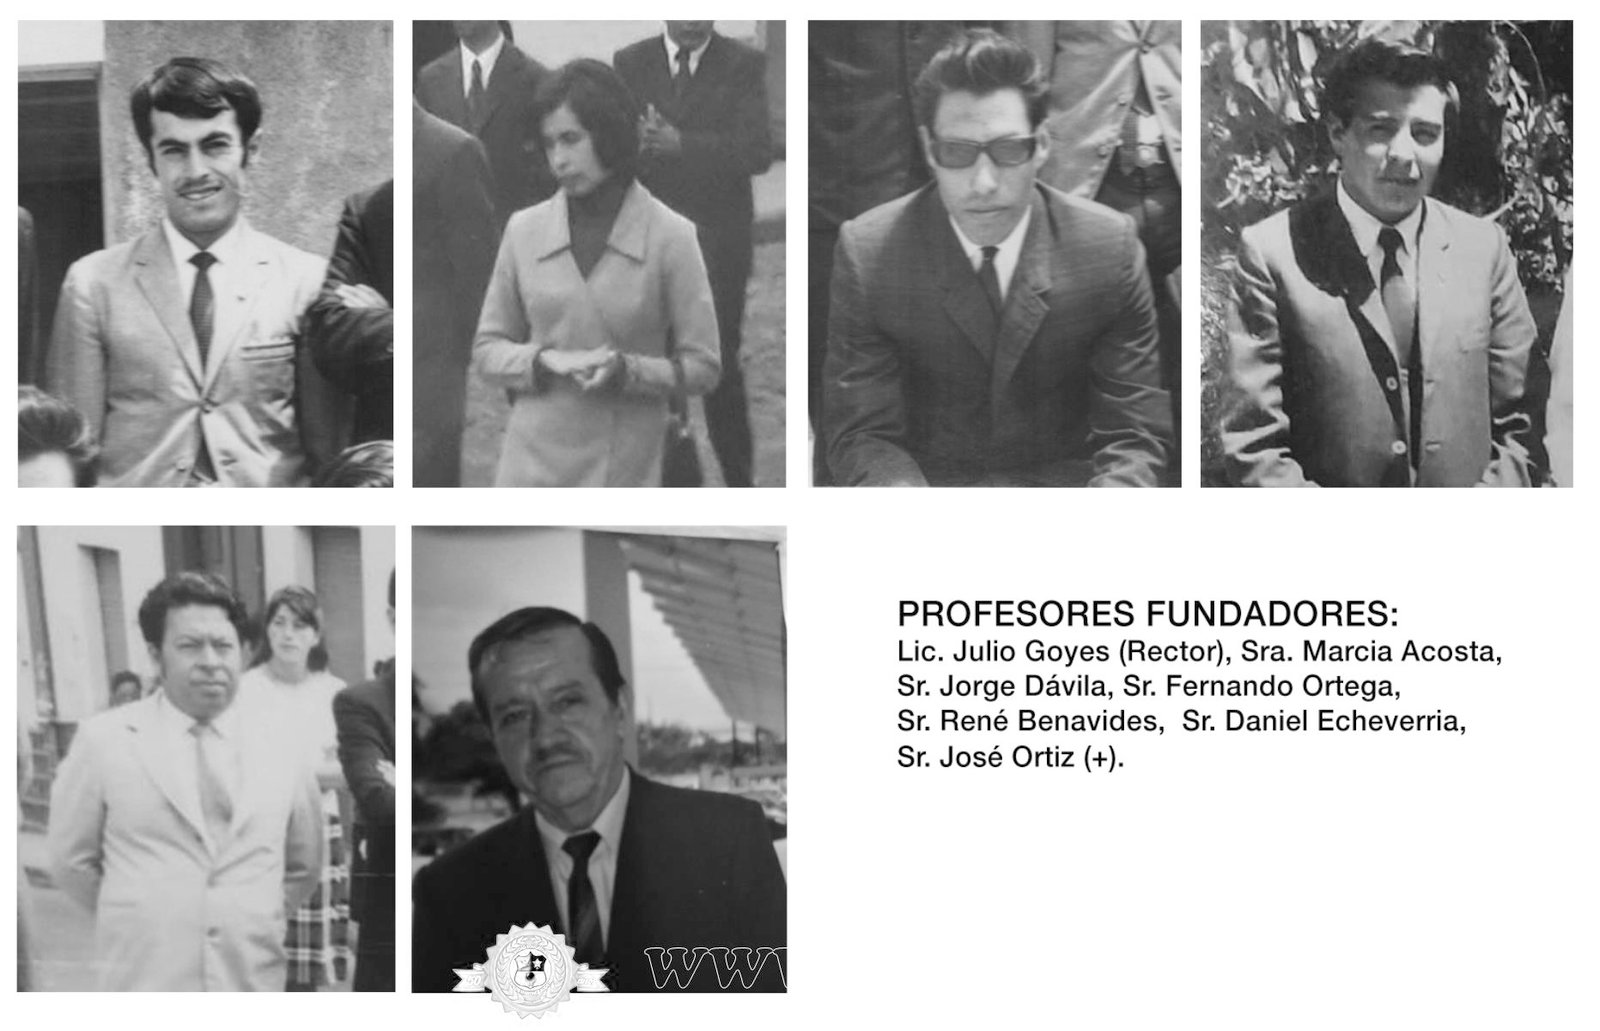 PROFESORES FUNDADORES<br/>Fotografías varias fuentes.<br/>No consta la fotografía del Profesor Sr. José Ortiz (+)